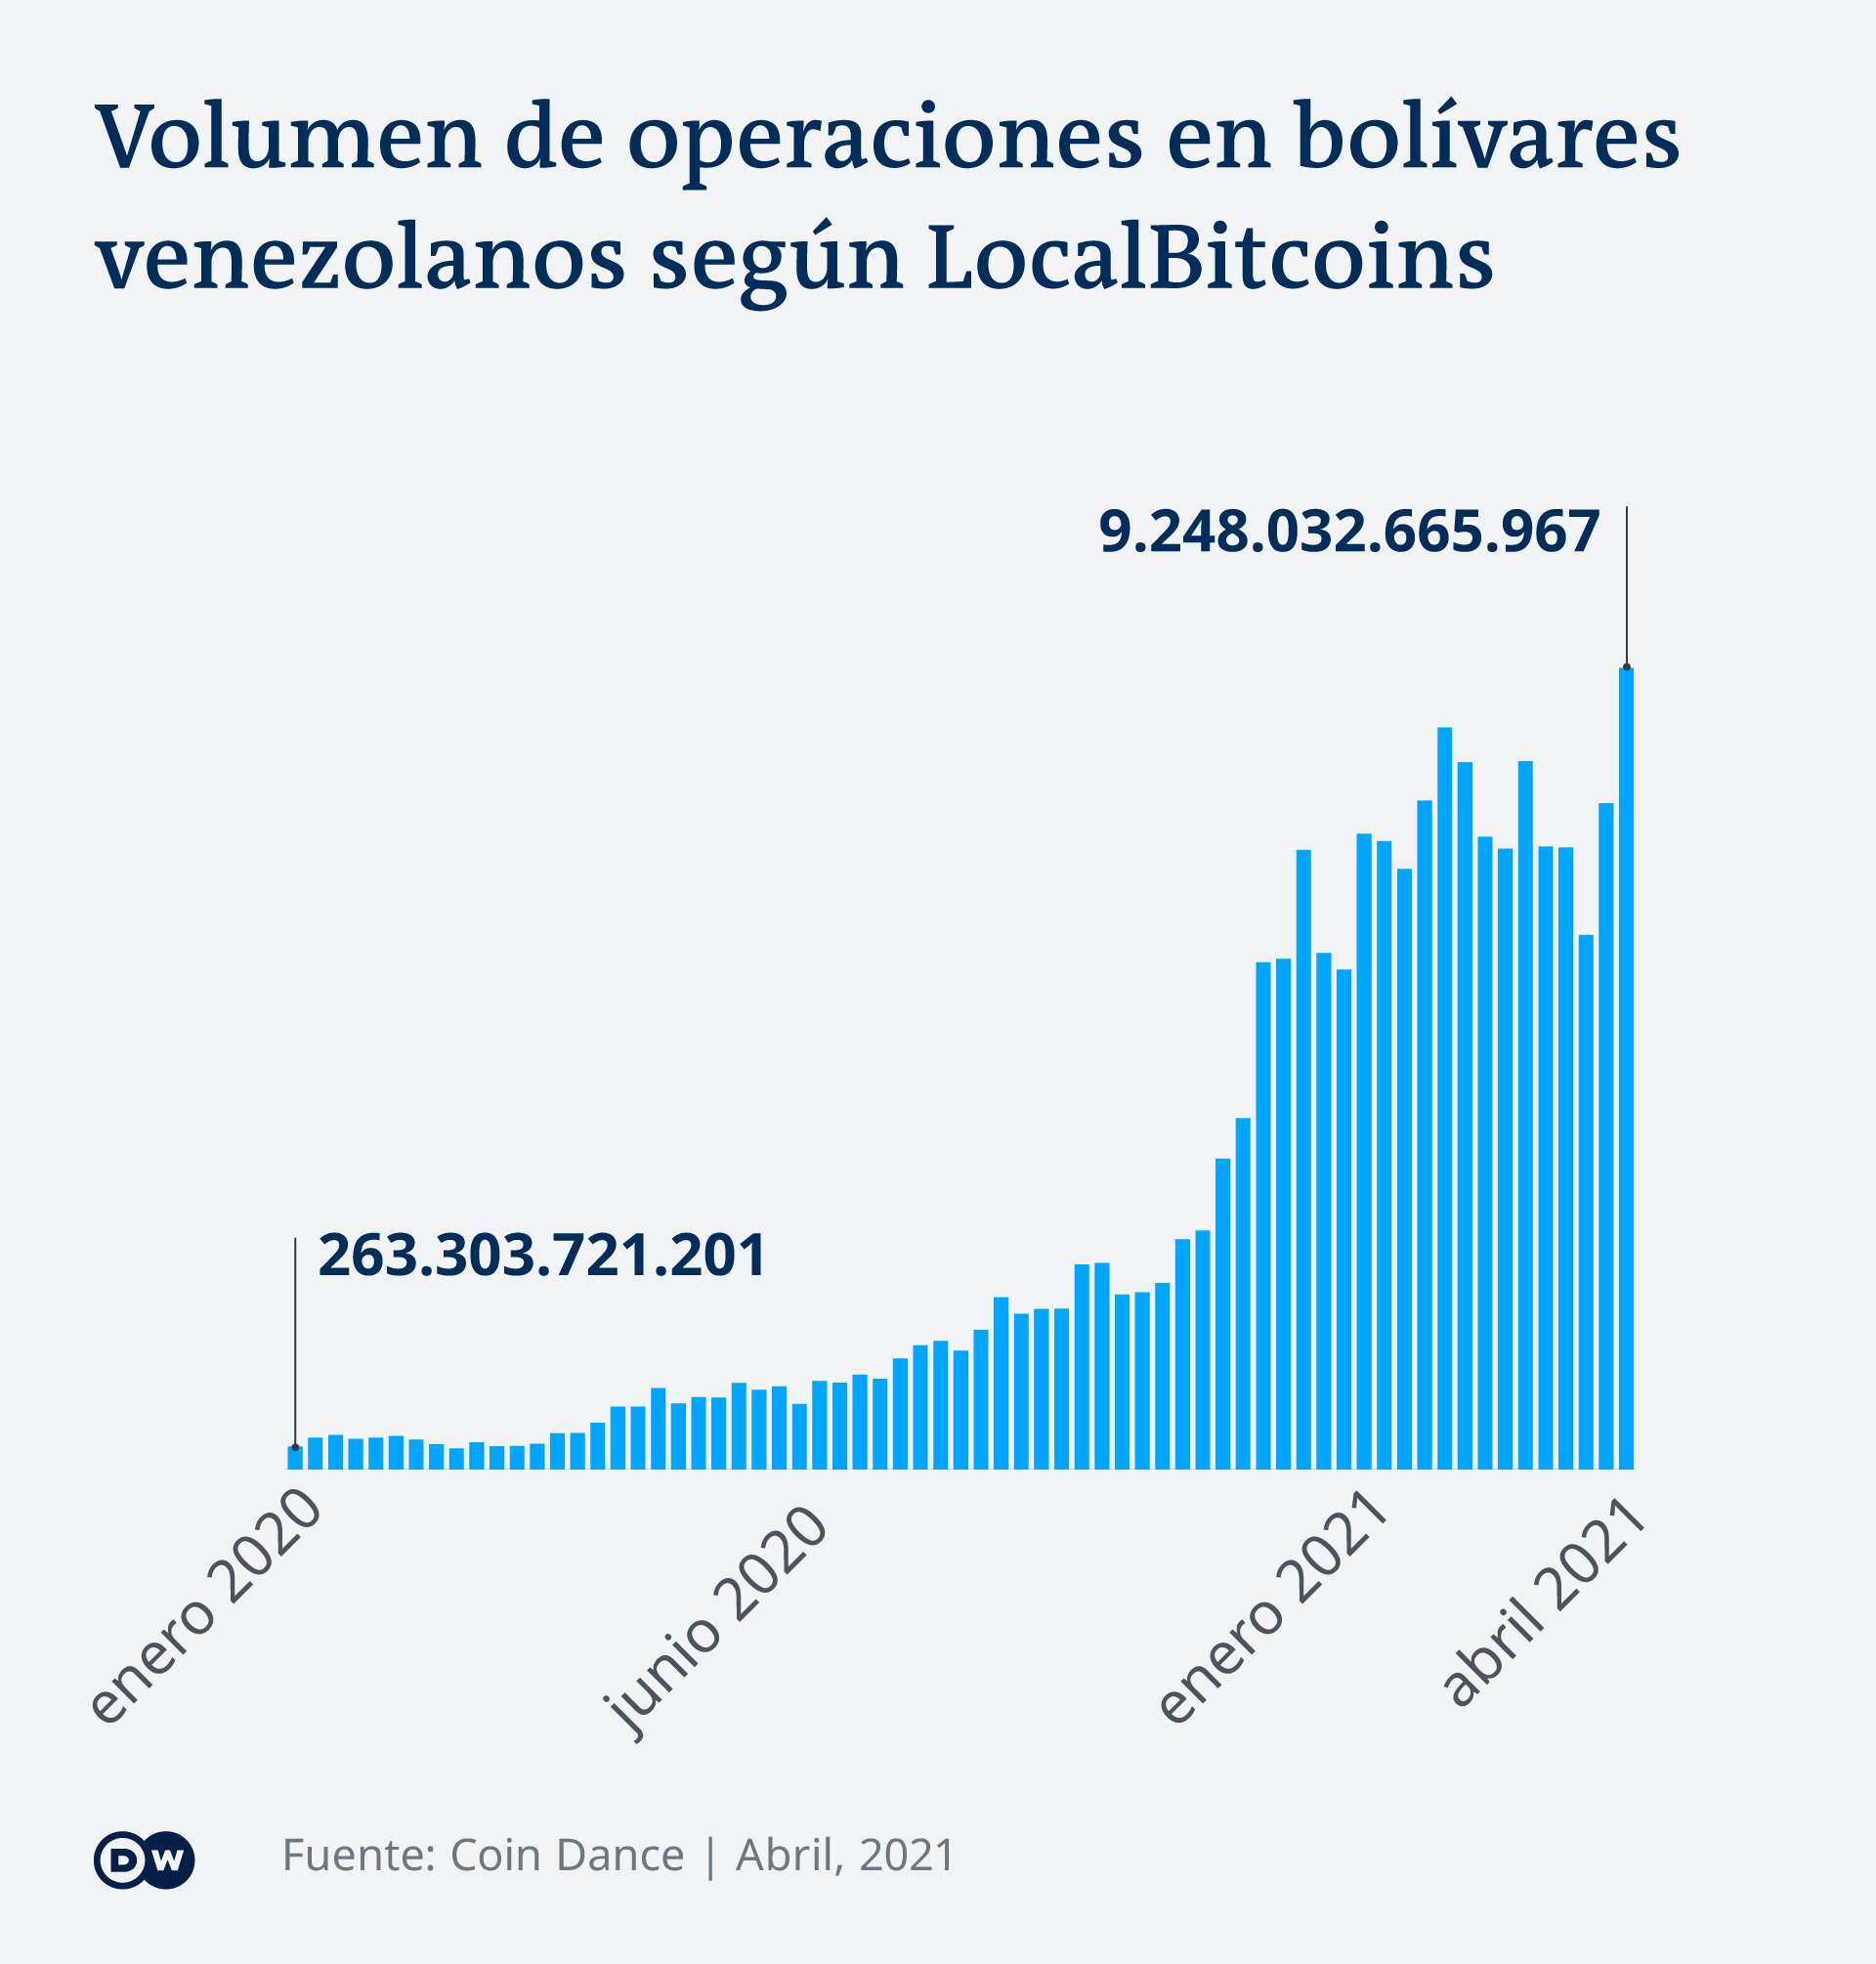 Gráfica sobre el volumen de operaciones en bolívares venezolanos según LocalBitcoins.